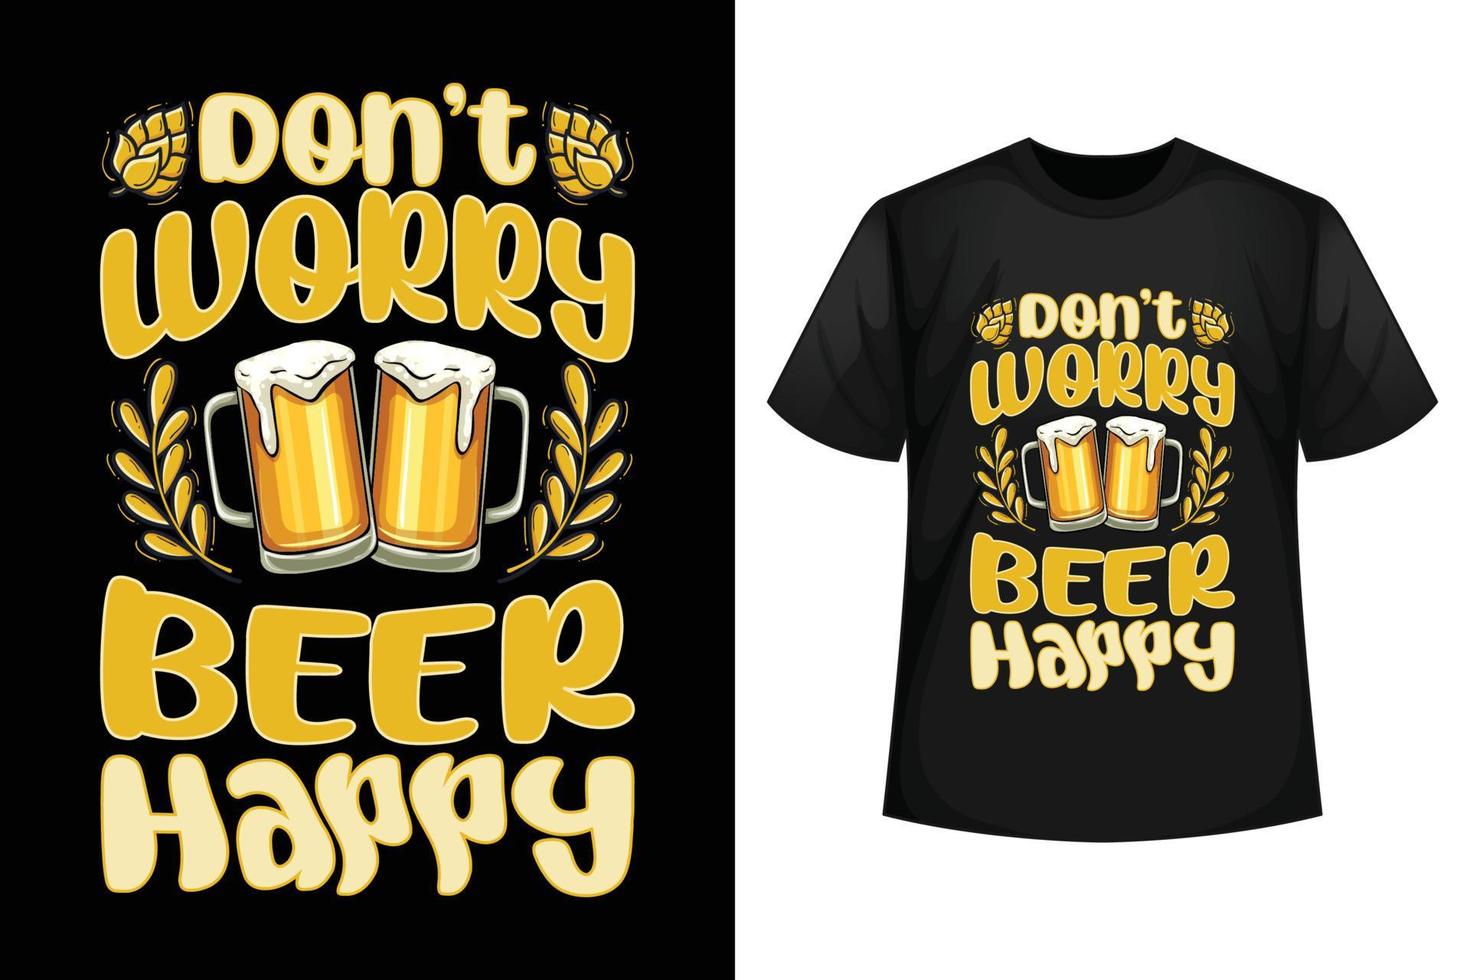 Don't worry beer happy - Beer t-shirt design template. vector